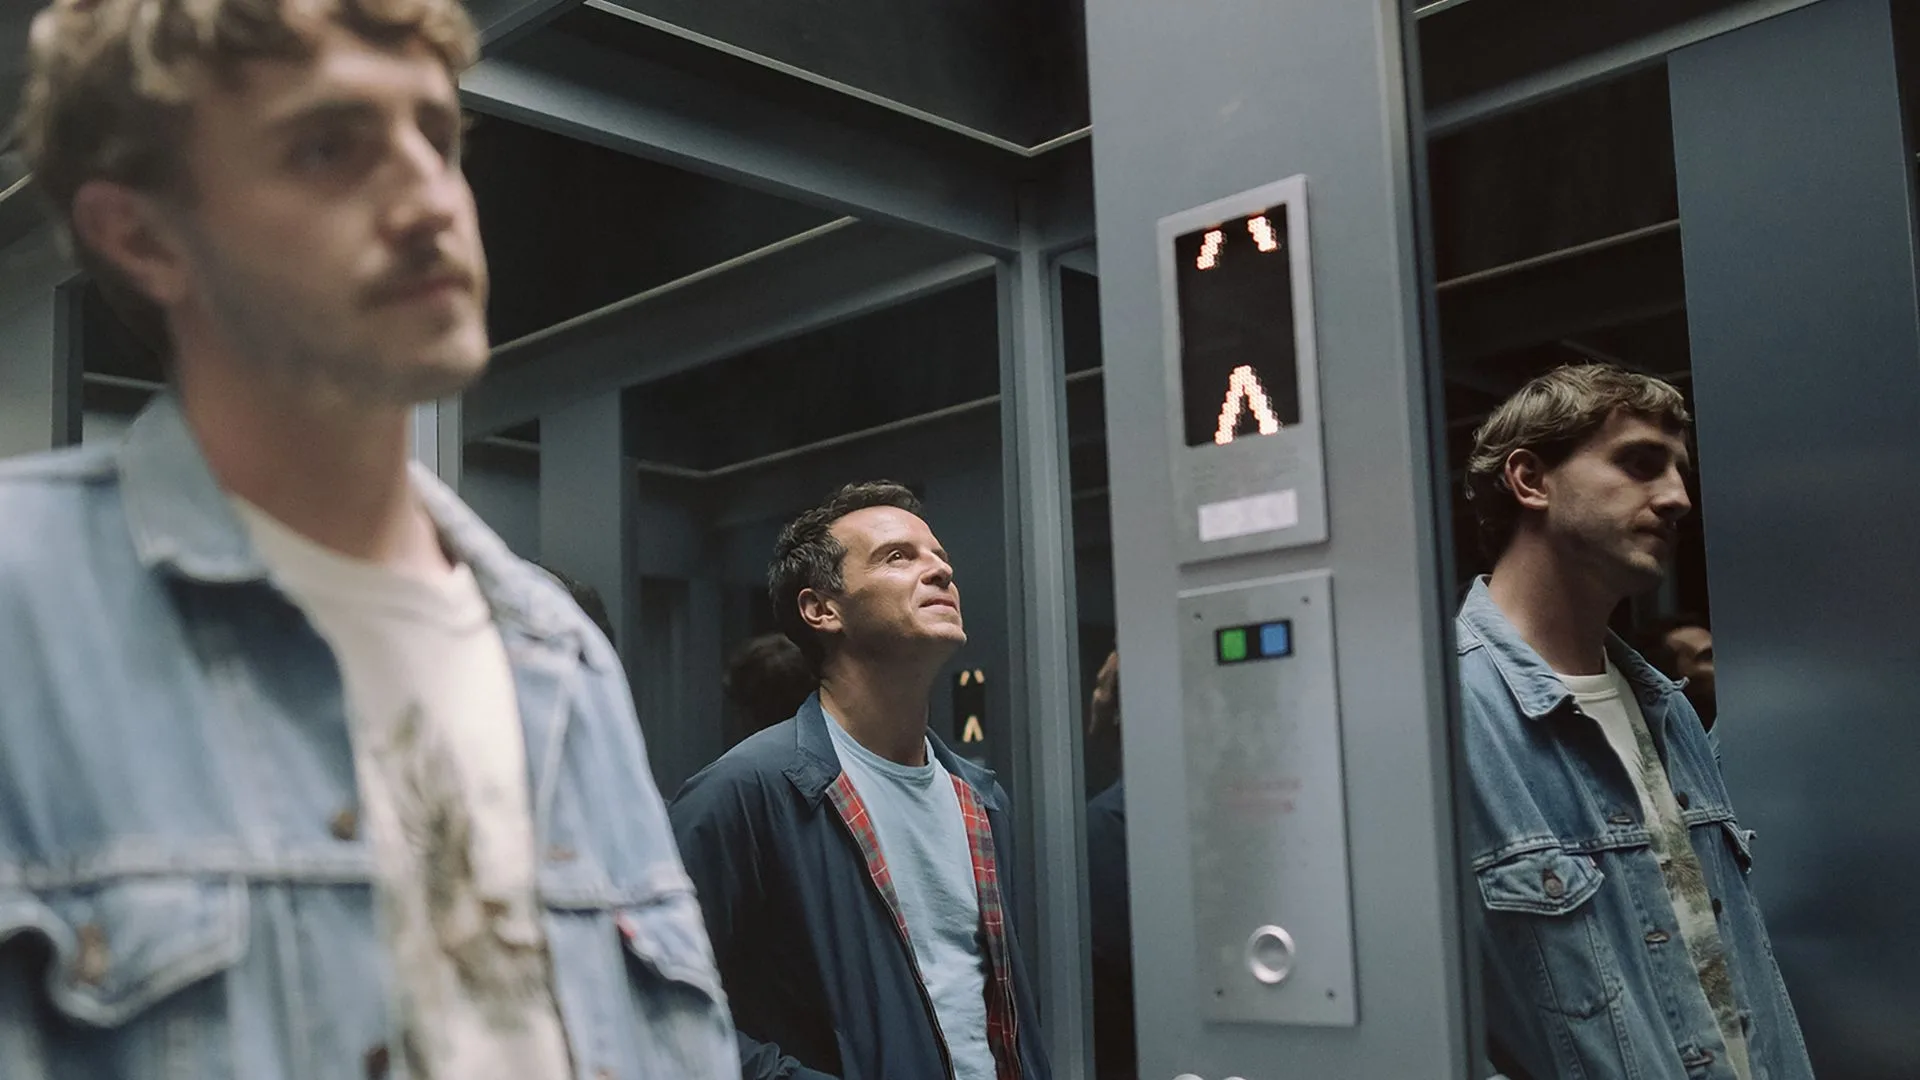 Todos somos extraños razones para verla escena elevador